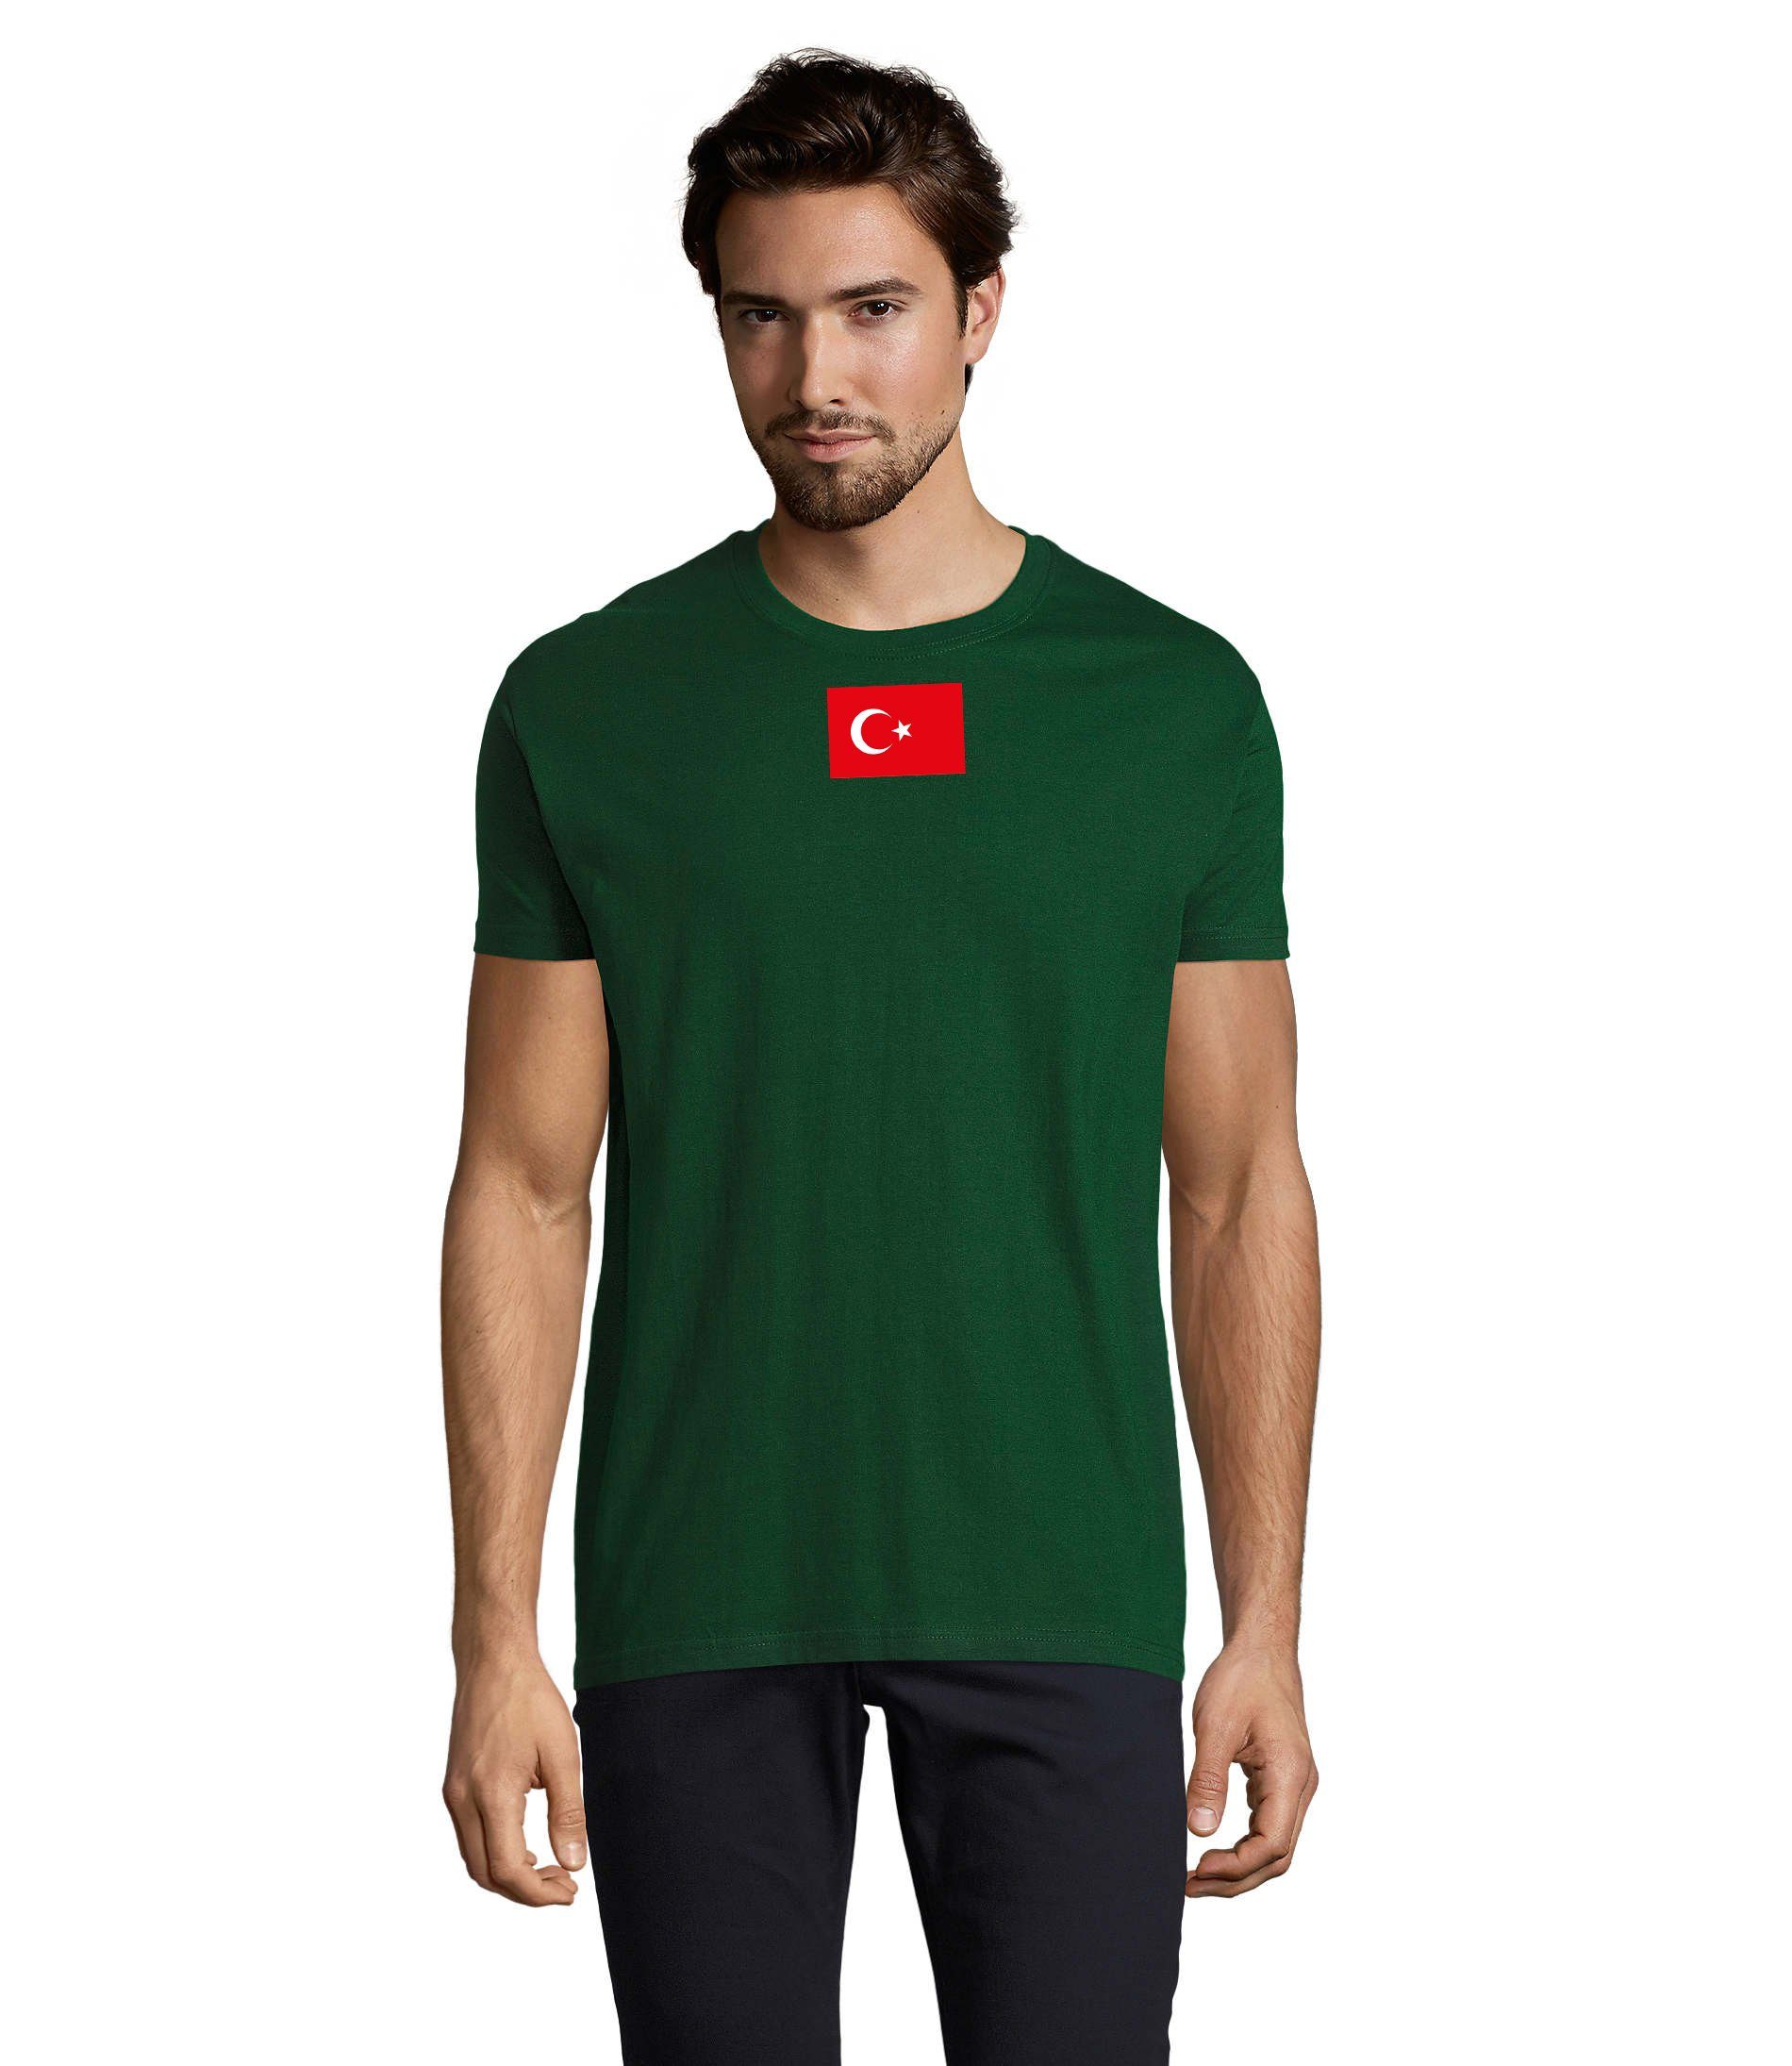 Blondie & Brownie T-Shirt Herren Türkei Turkey Ukraine USA Army Armee Nato Peace Air Force Flaschengrün